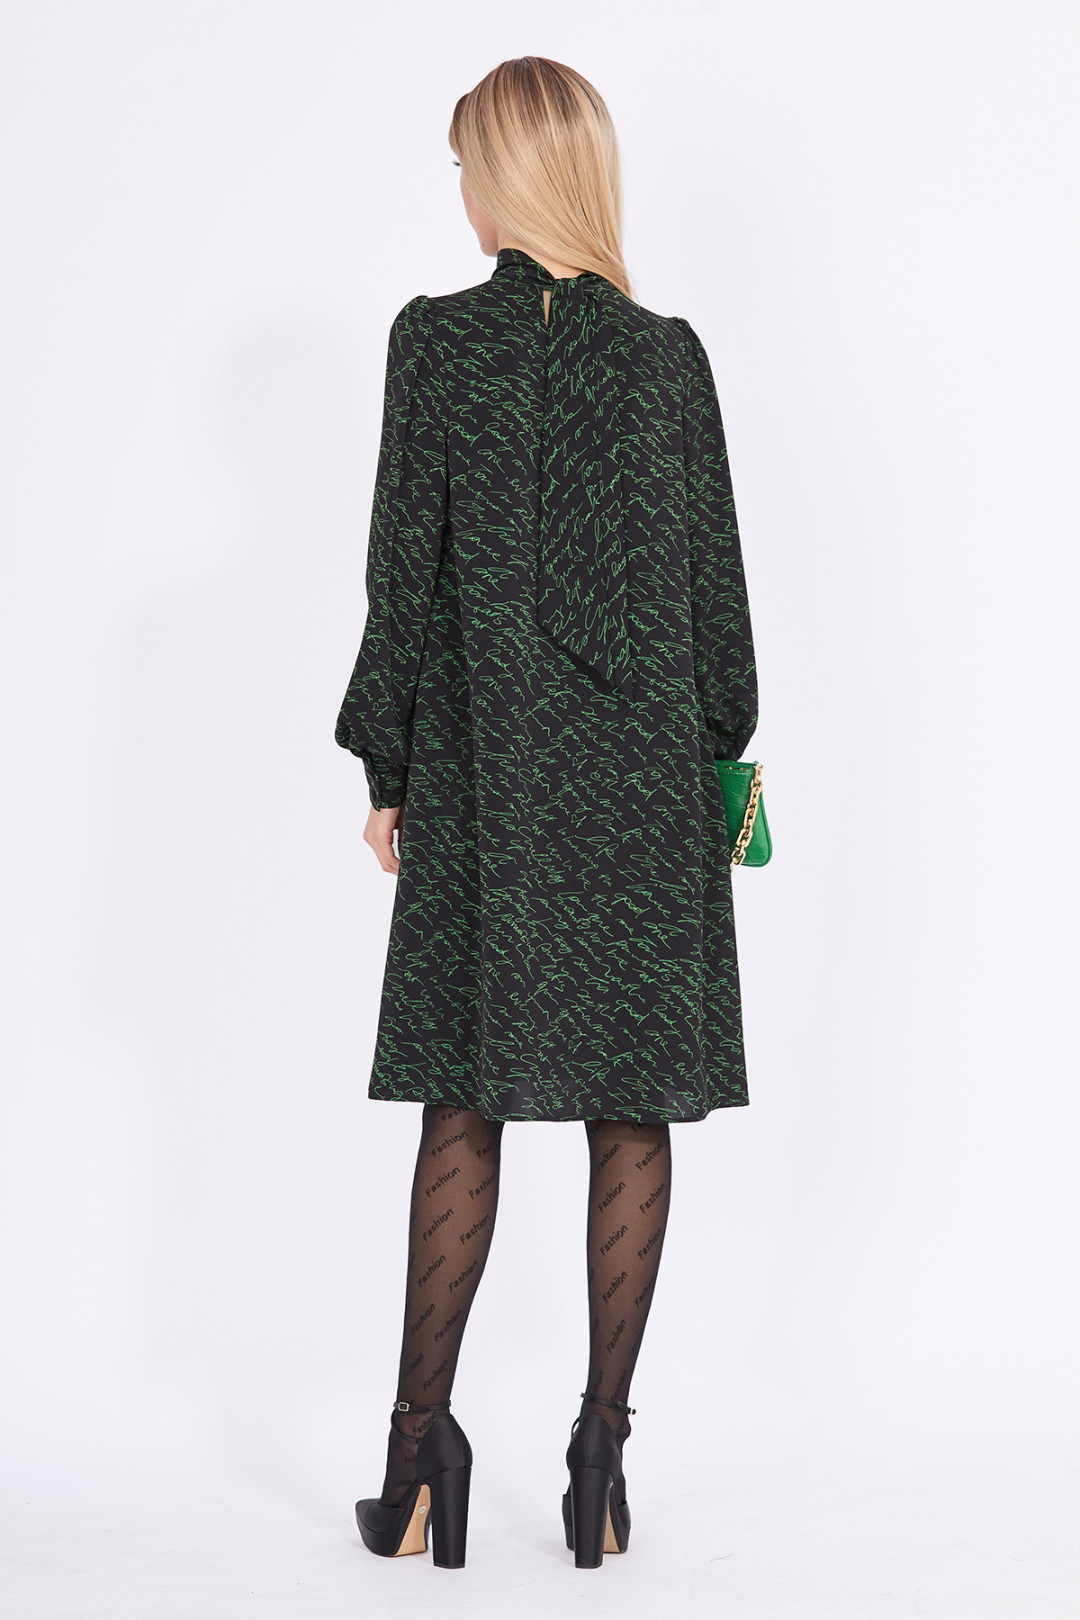 Платье Эола Стиль 2320 черный с зеленым рисунком